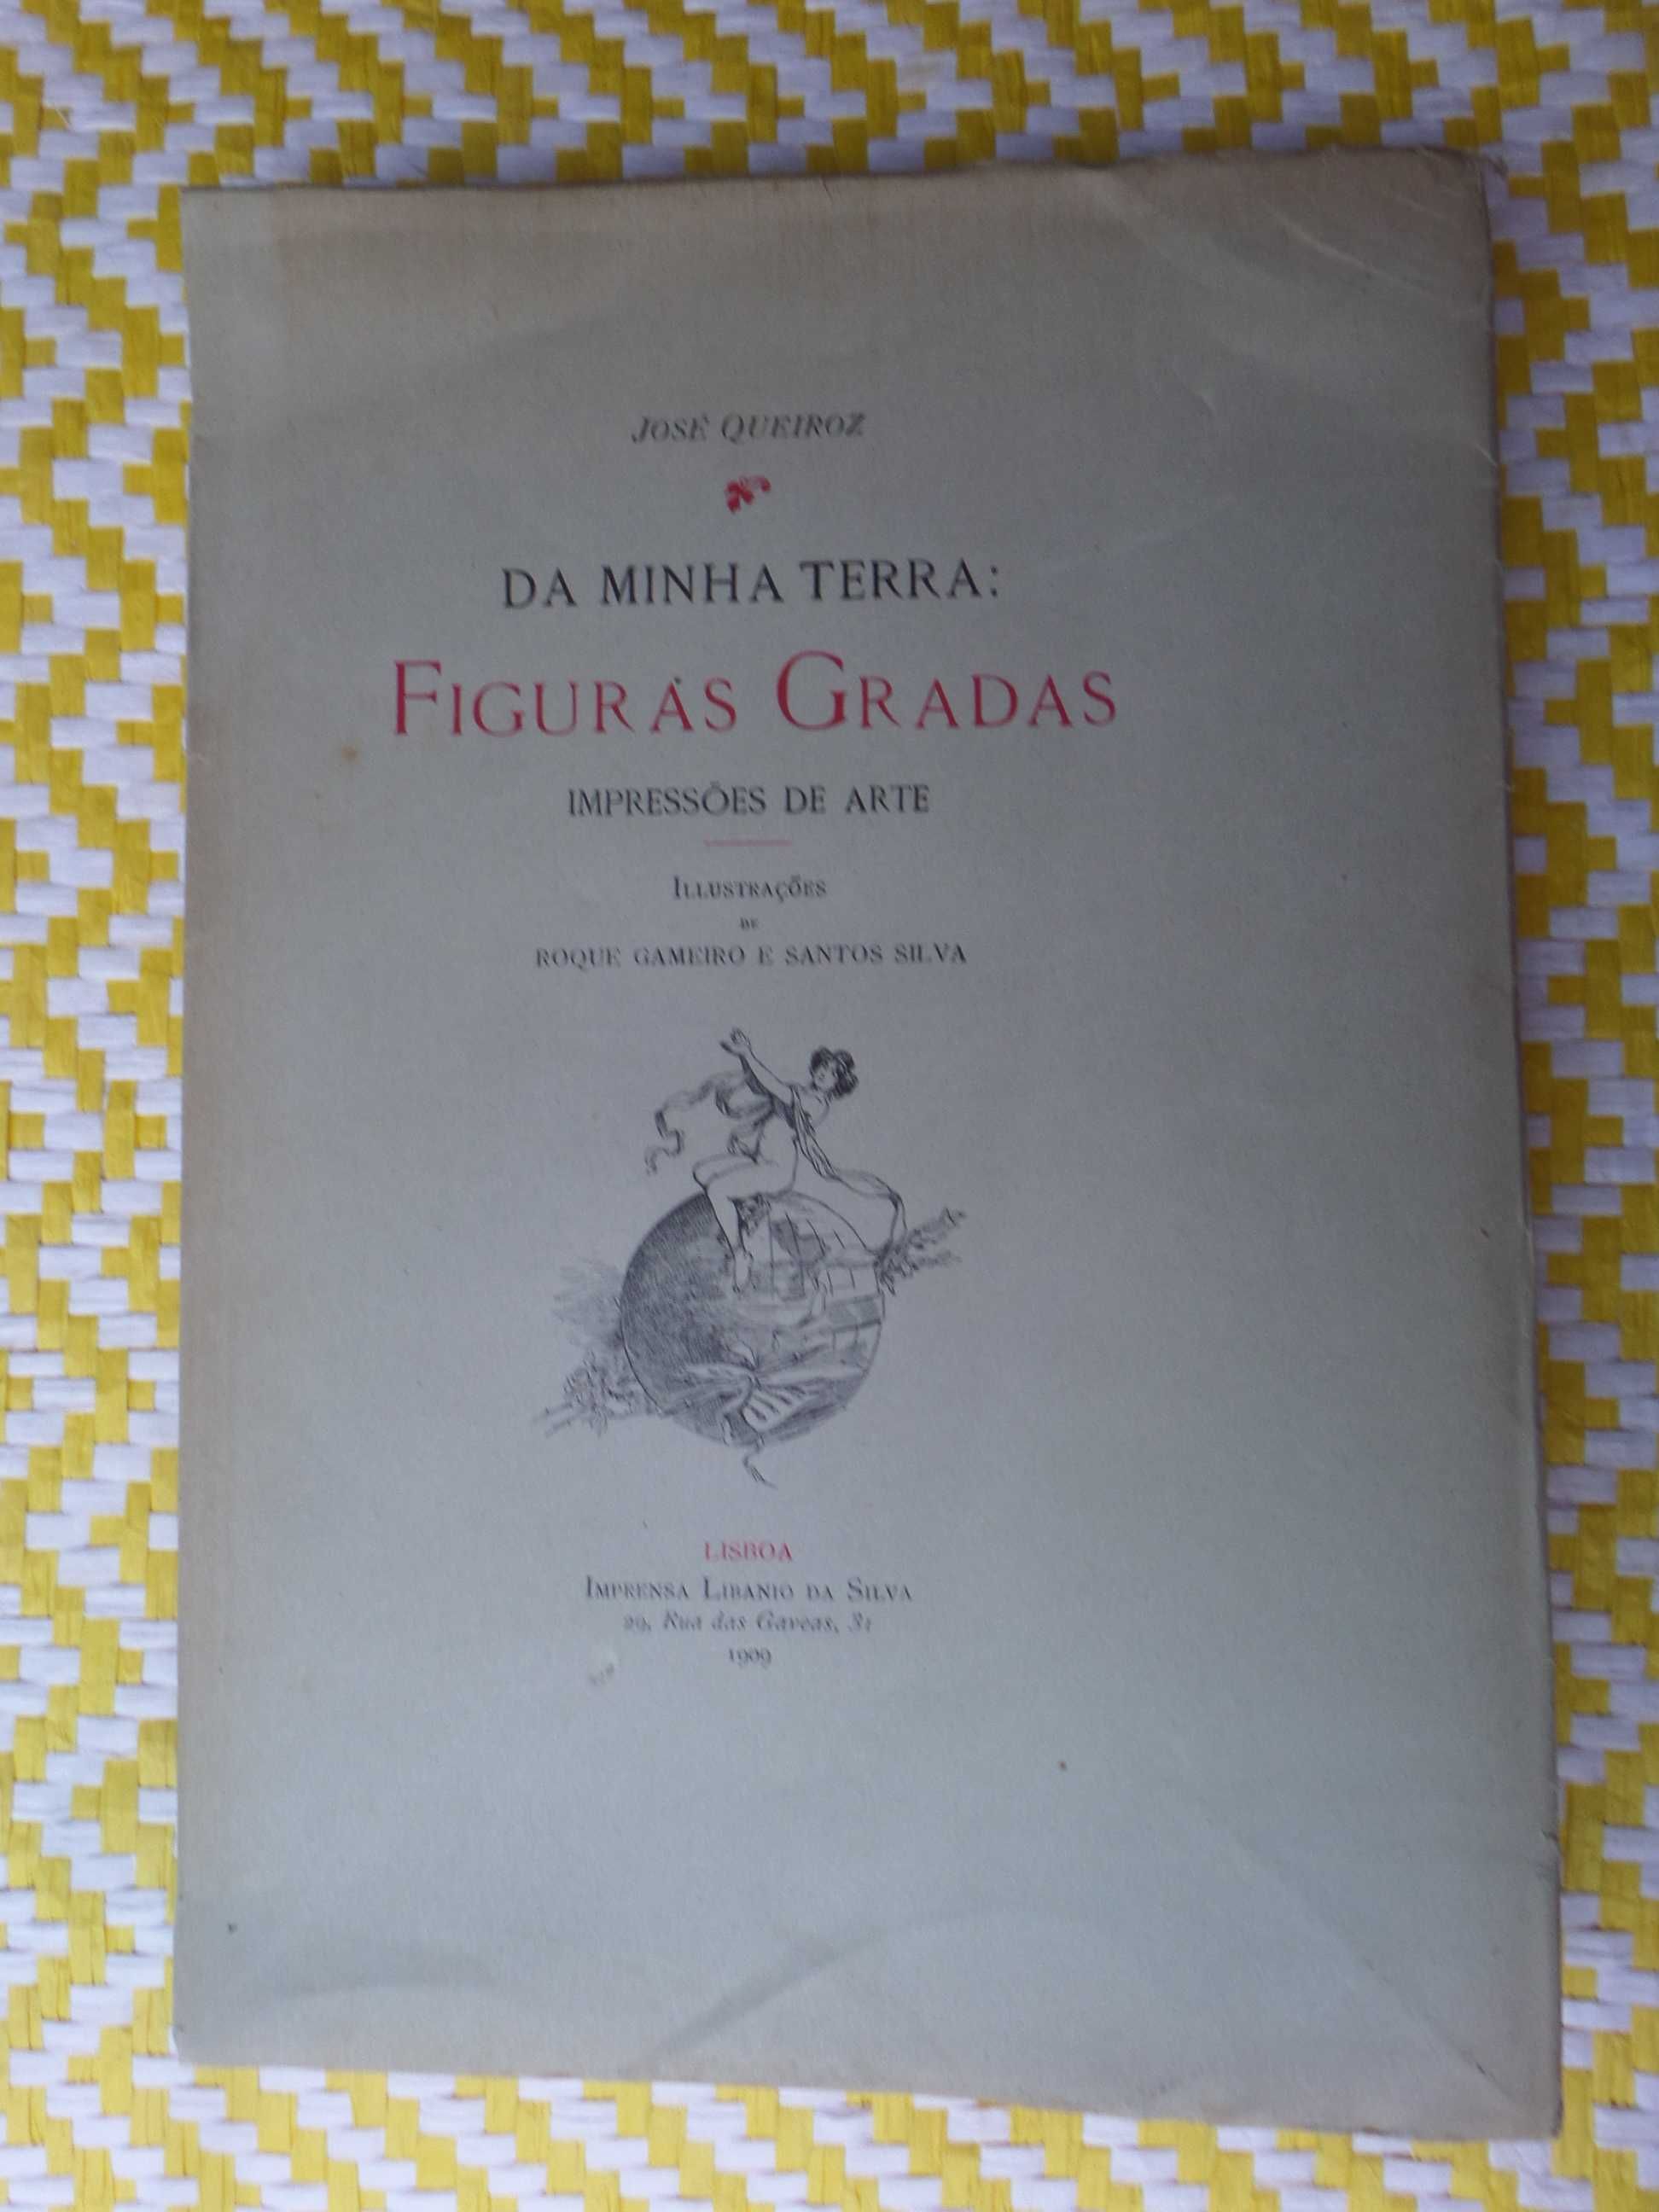 Da minha terra: FIGURAS GRADAS Impressões de Arte 1ª Edição - 1909